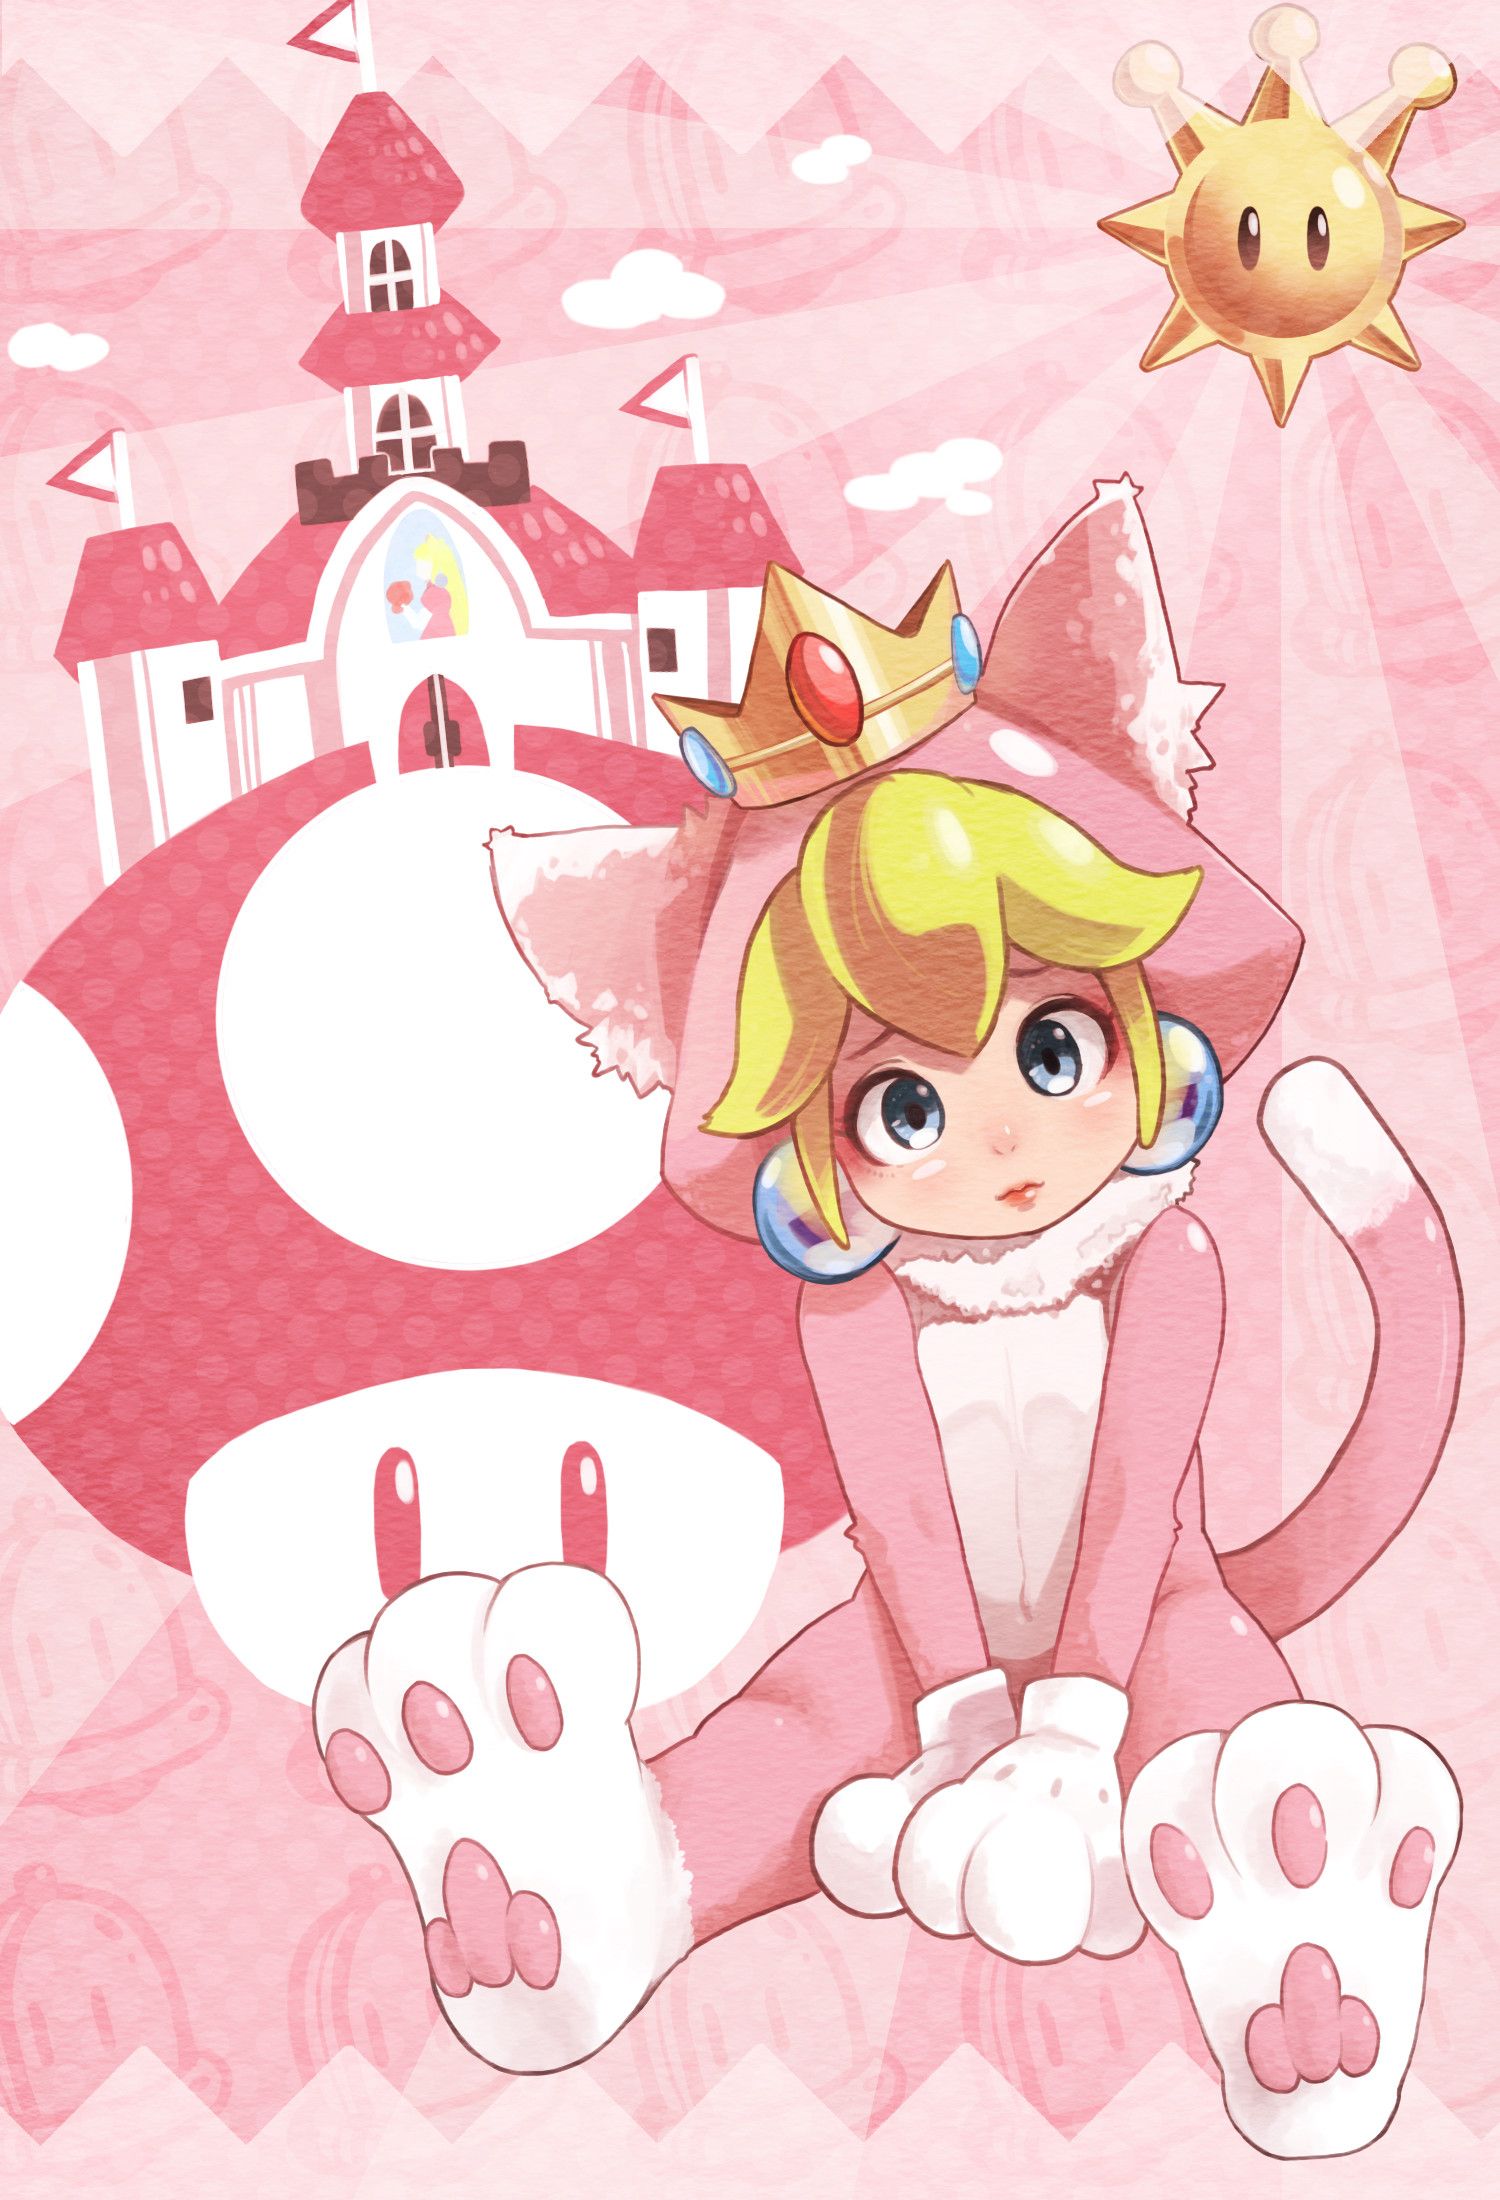 A blonde cat girl in a pink dress and a tiara - Princess Peach